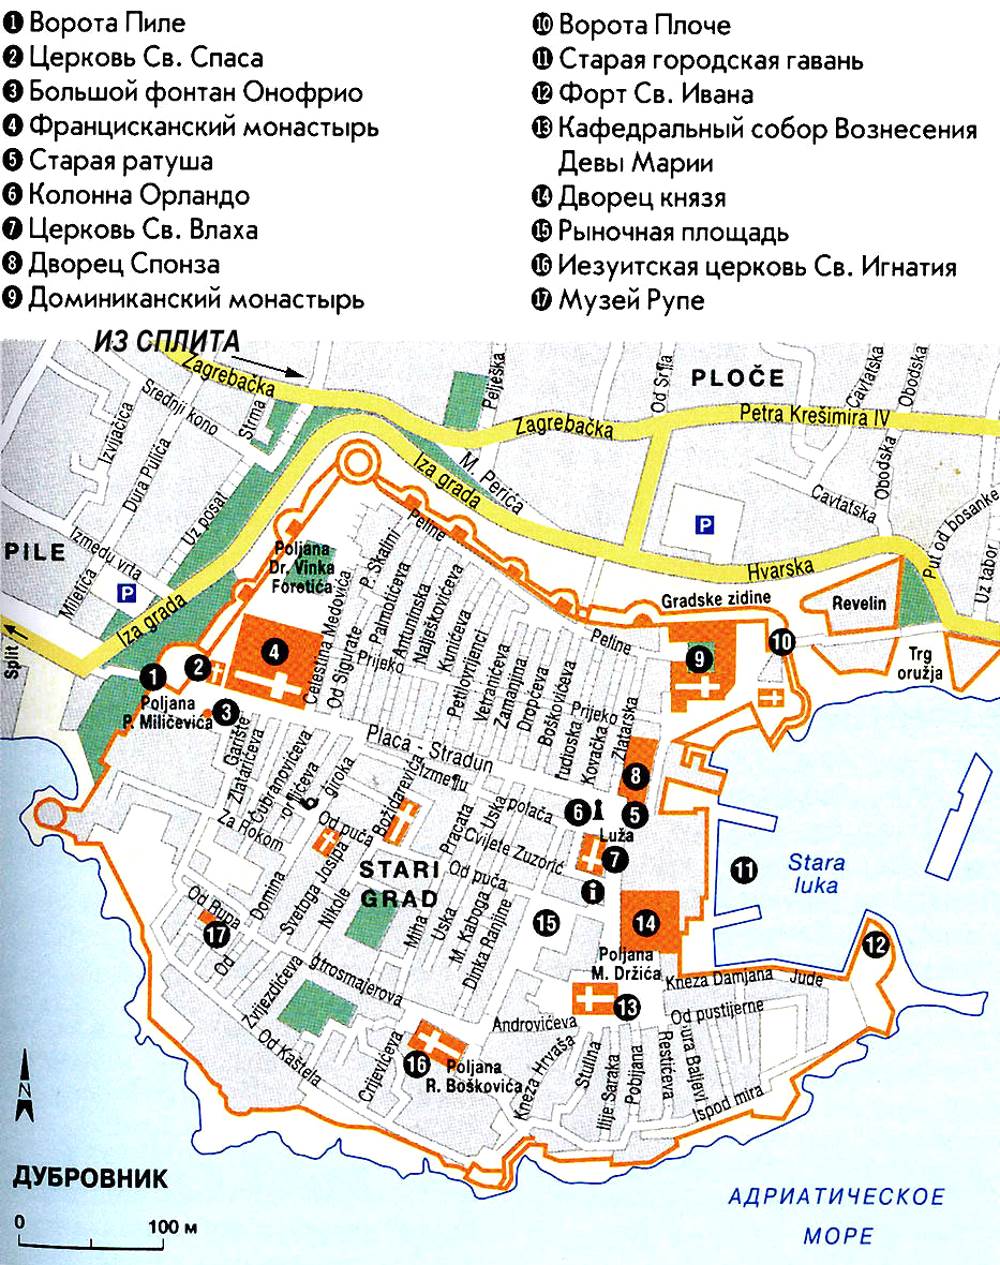 Достопримечательности Дубровника на карте города